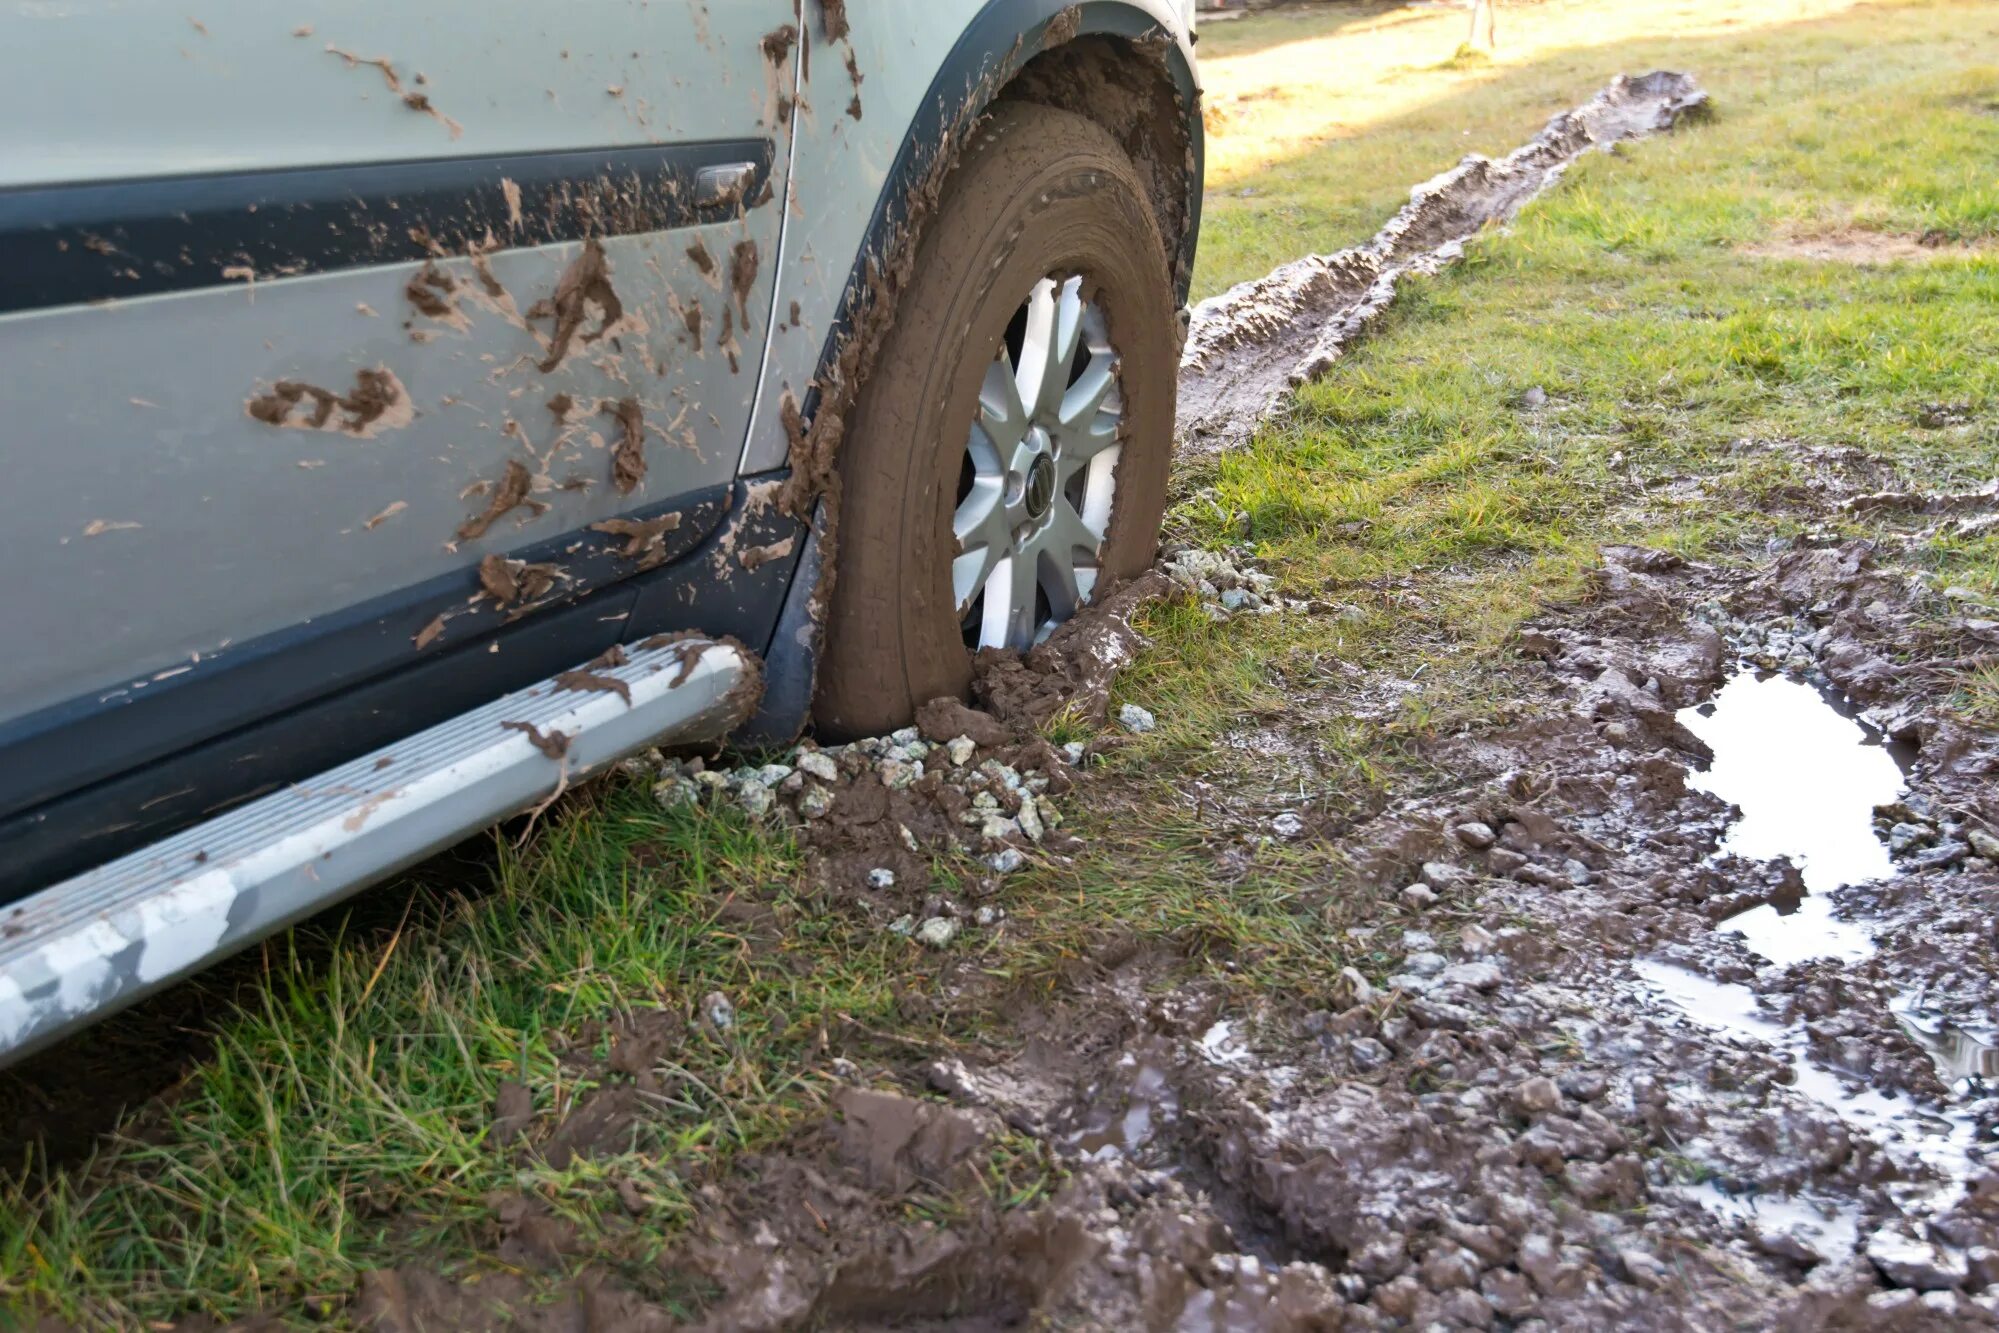 Ну что там застряла. Колесо в грязи. Машина застряла в грязи. Машина забуксовала в грязи. Грязь из под колес.